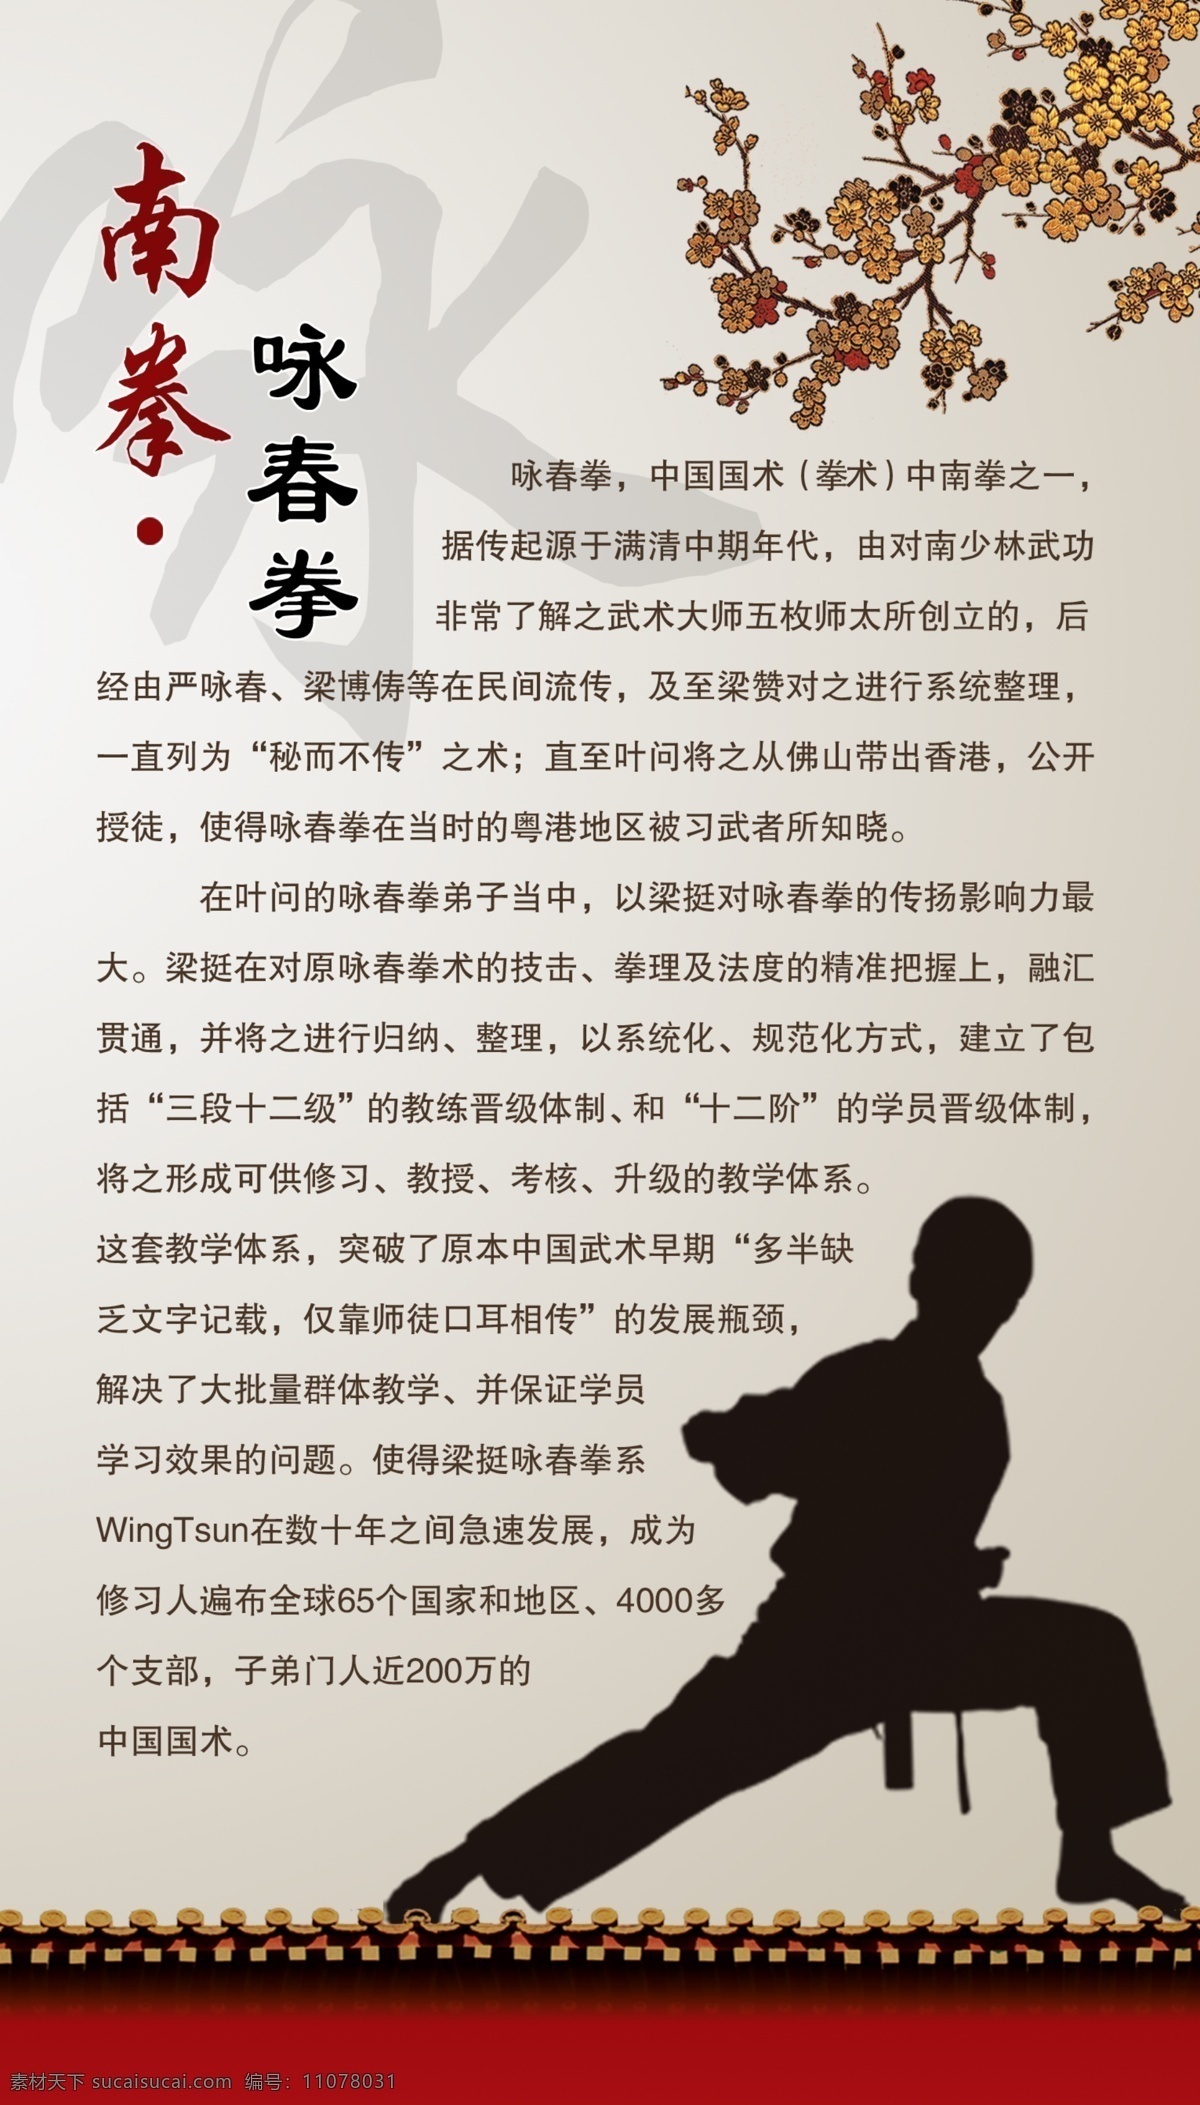 南拳免费下载 功夫 广告设计模板 体育 武术 学校 源文件 运动 南拳 咏春拳 其他海报设计